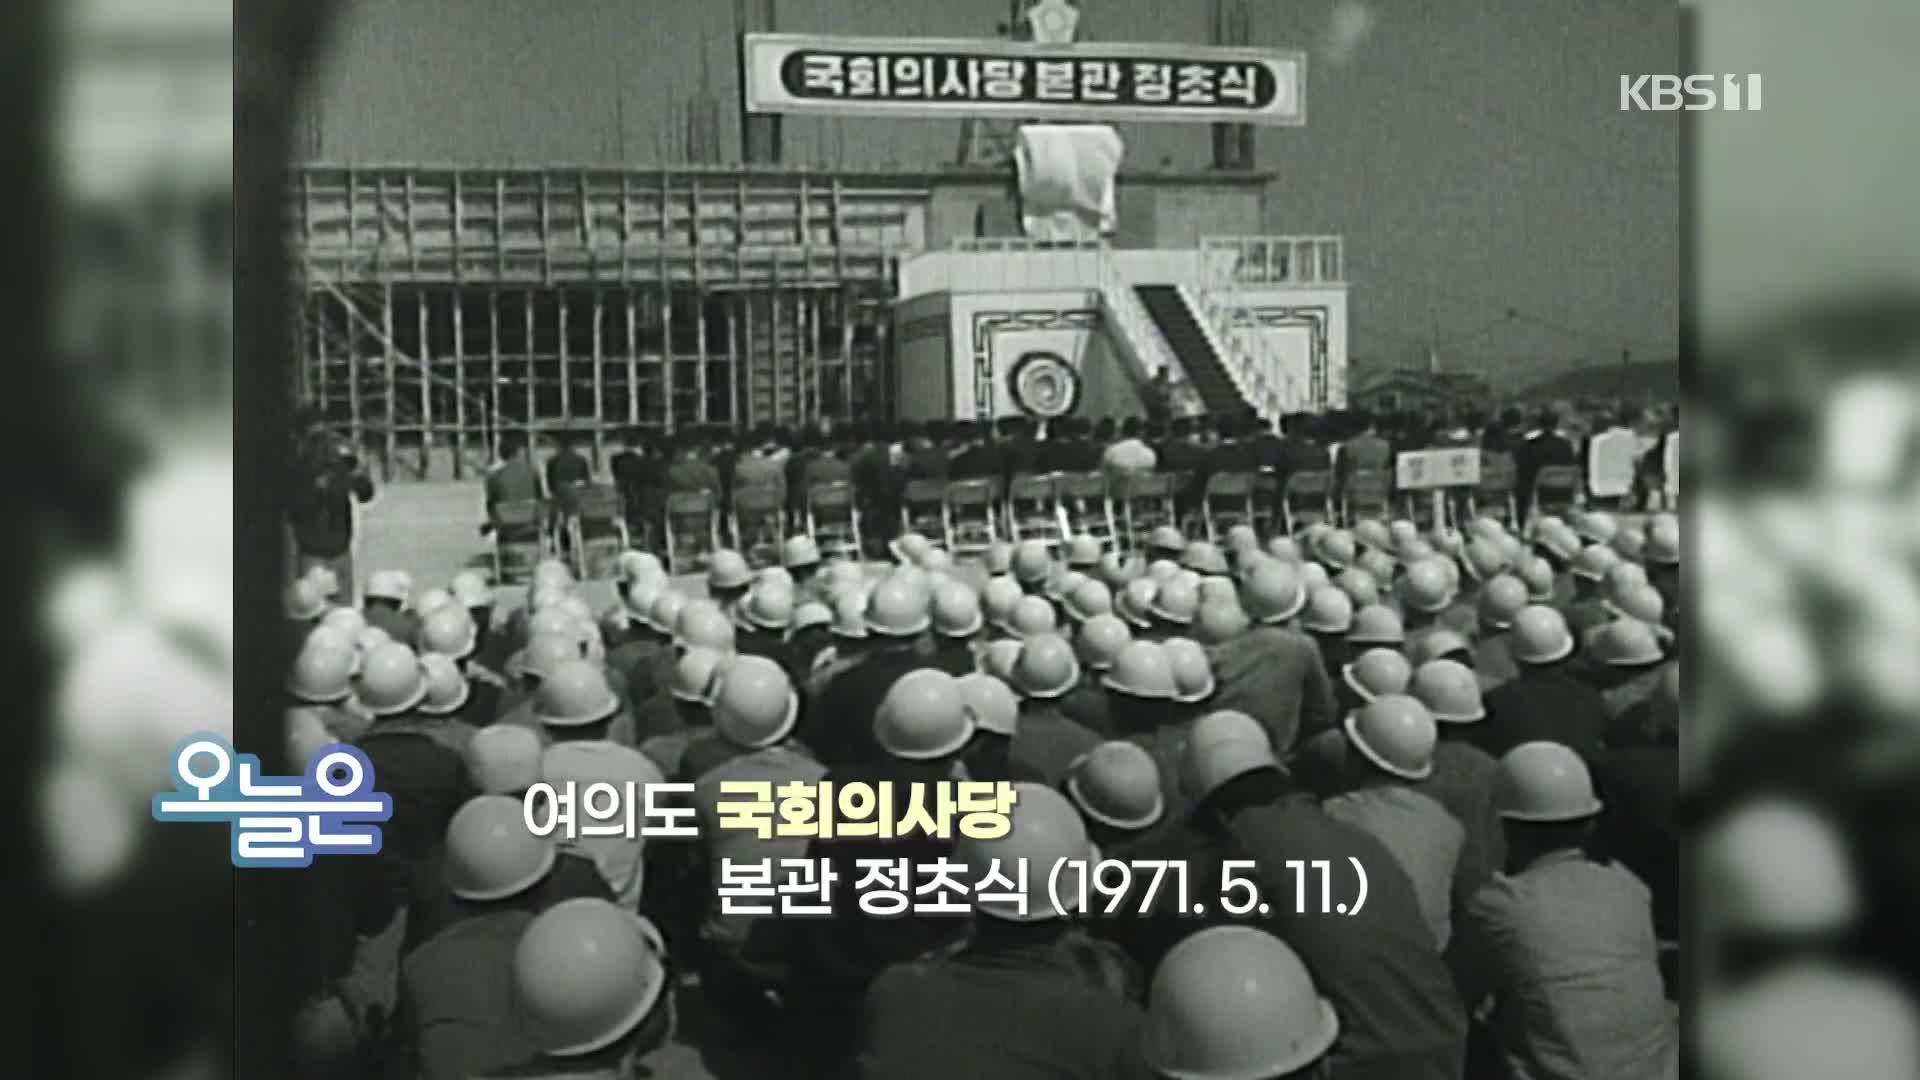 [오늘은] 여의도 국회의사당 본관 정초식 (1971.5.11.)